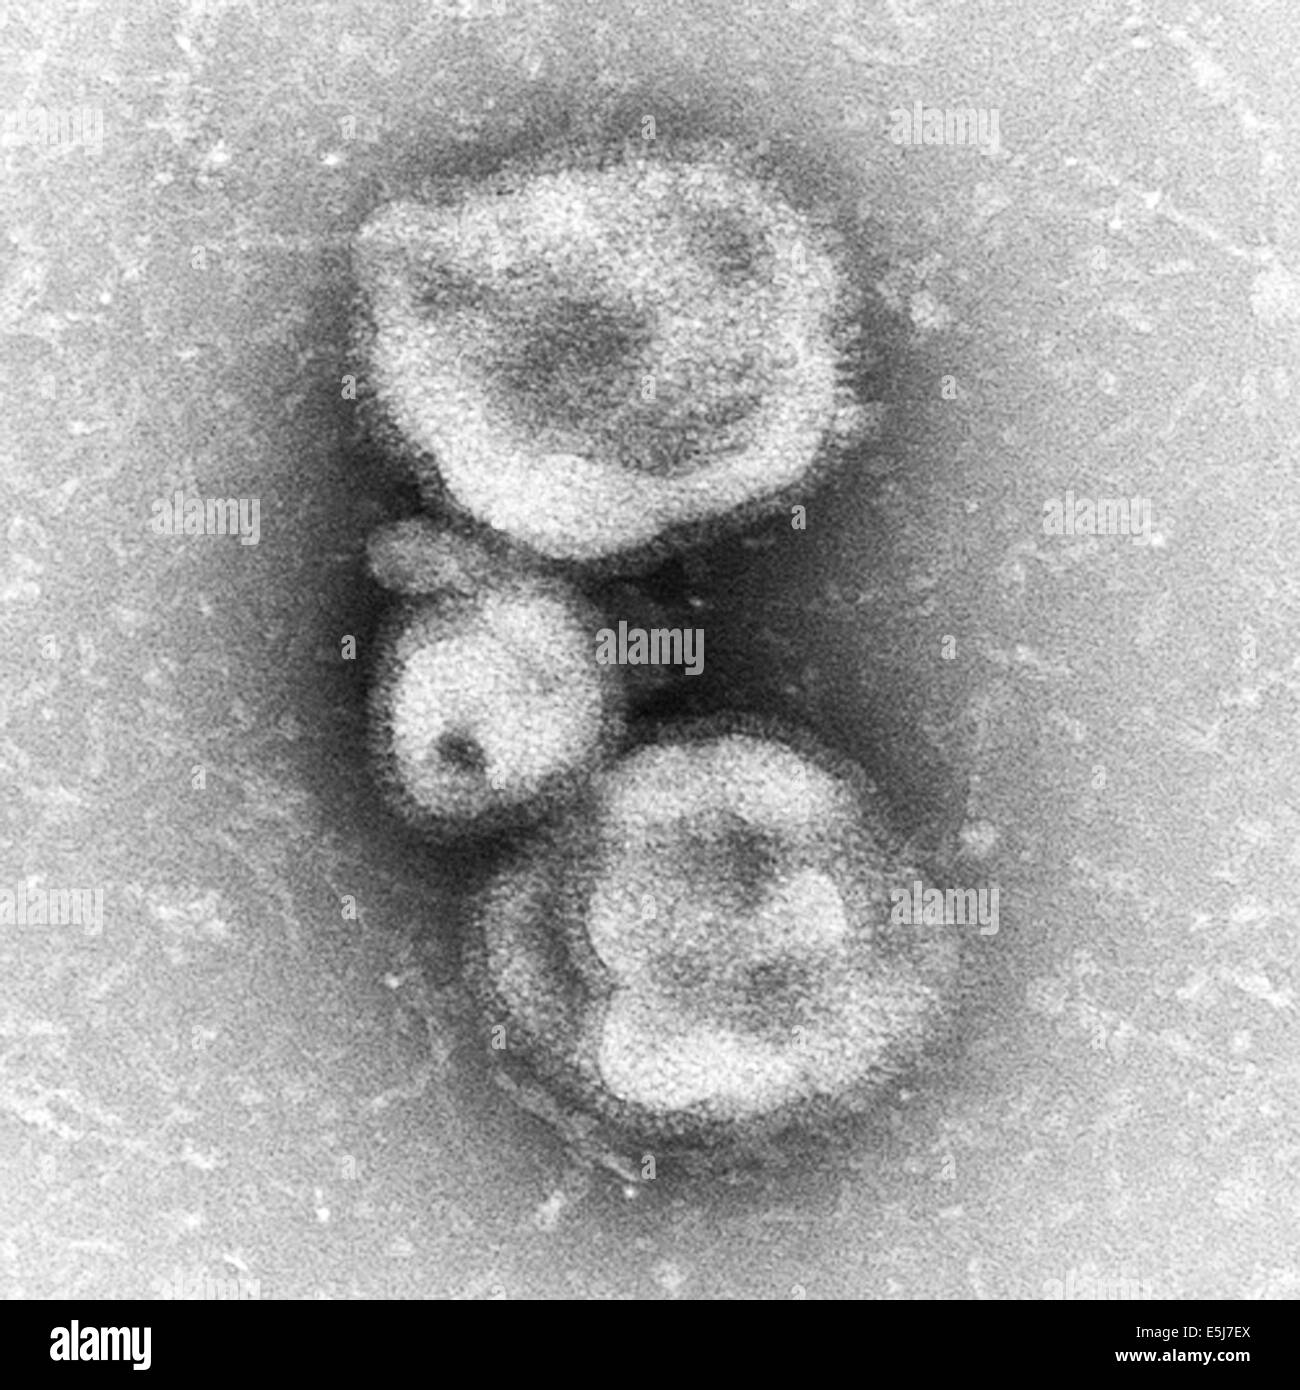 Sferiche di influenza H7N9 virus come osservata attraverso un microscopio elettronico. Sfere di virus sono osservati in questa foto dagli archivi di stampa Ritratto Service Foto Stock